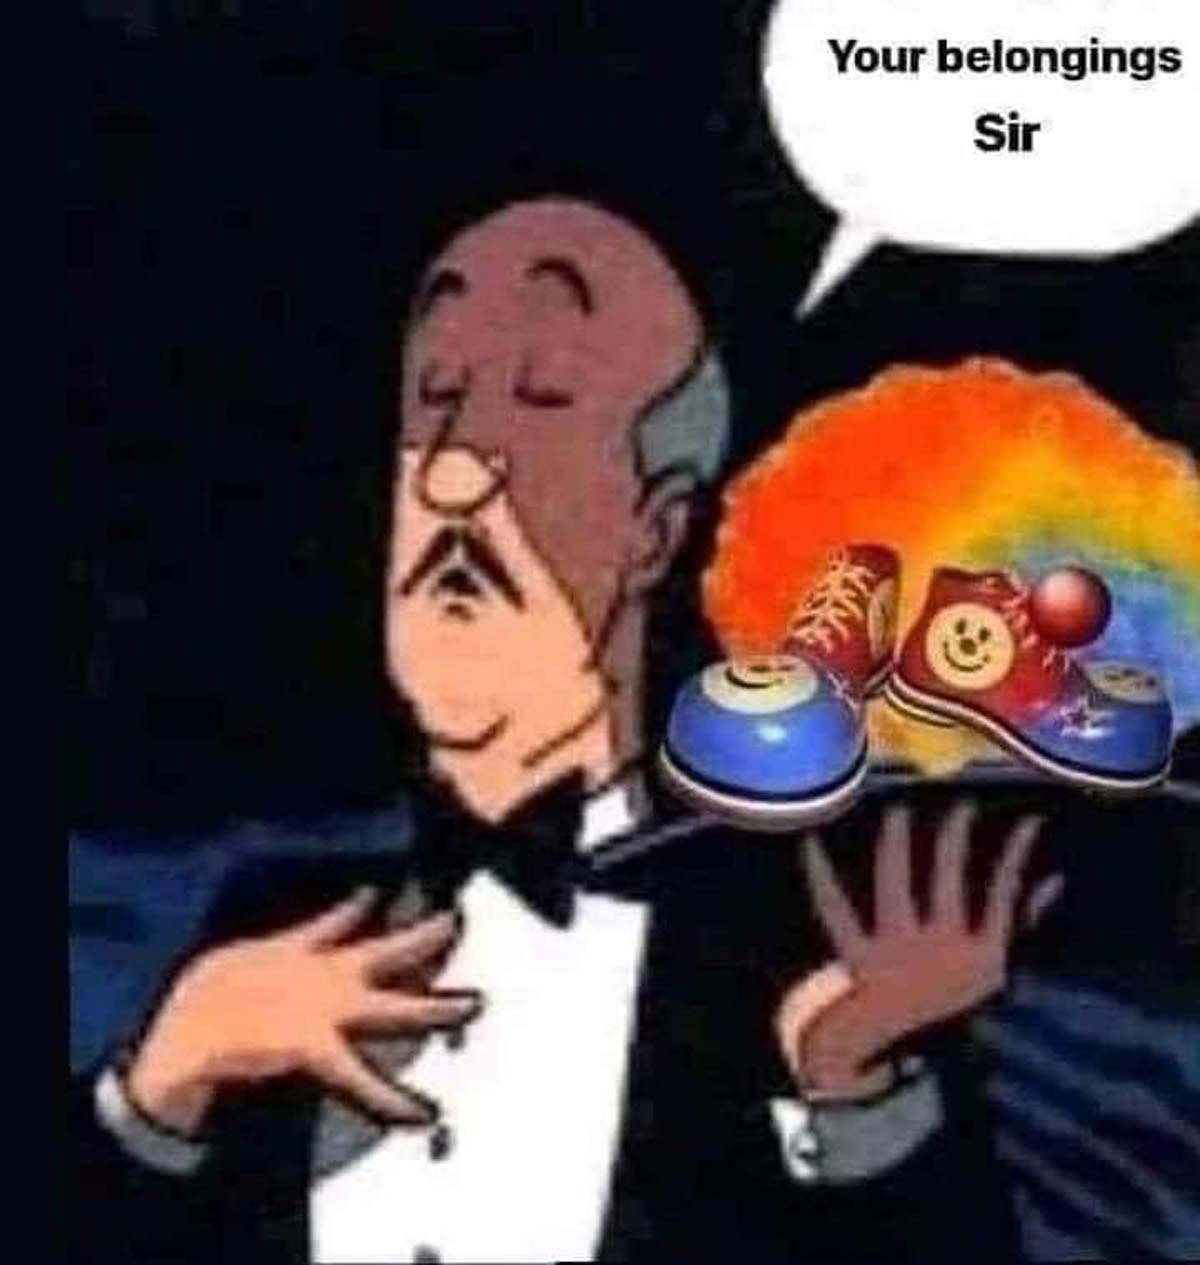 your belongings sir - Your belongings Sir